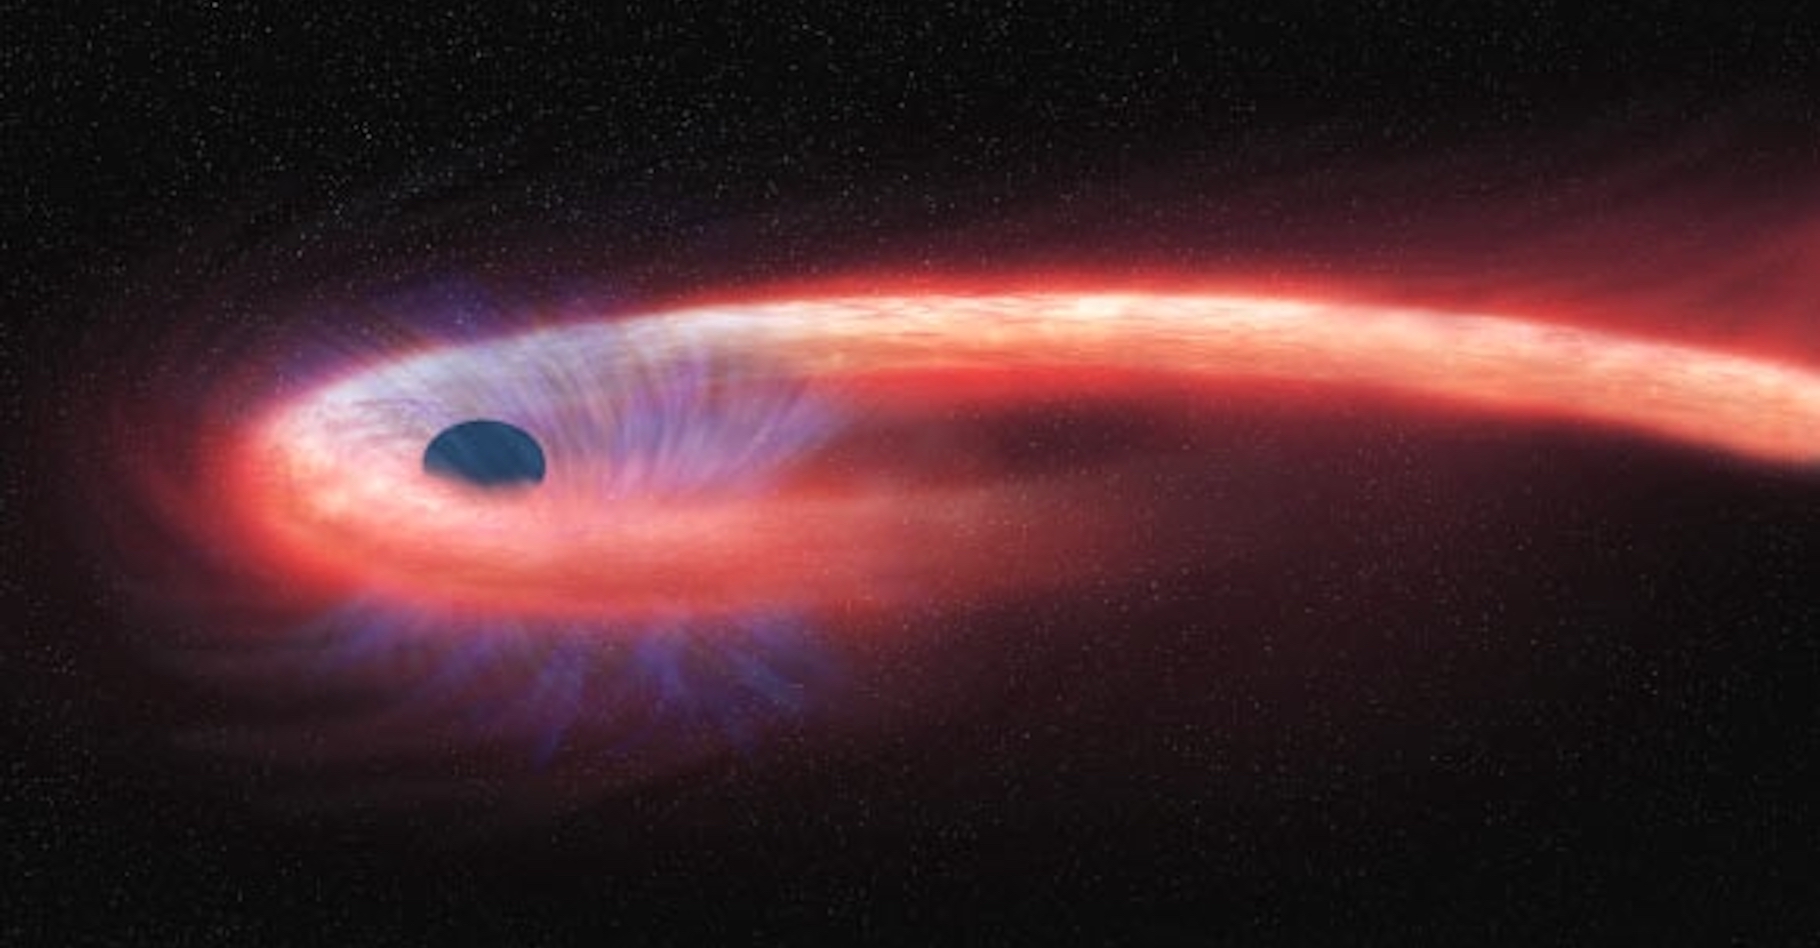 Des astronomes de l’Institut pour la recherche spatiale des Pays-Bas ont observé des détails d’une étoile « spaghettifiée » par un trou noir supermassif. Ici, une vue d’artiste. © Institut pour la recherche spatiale des Pays-Bas